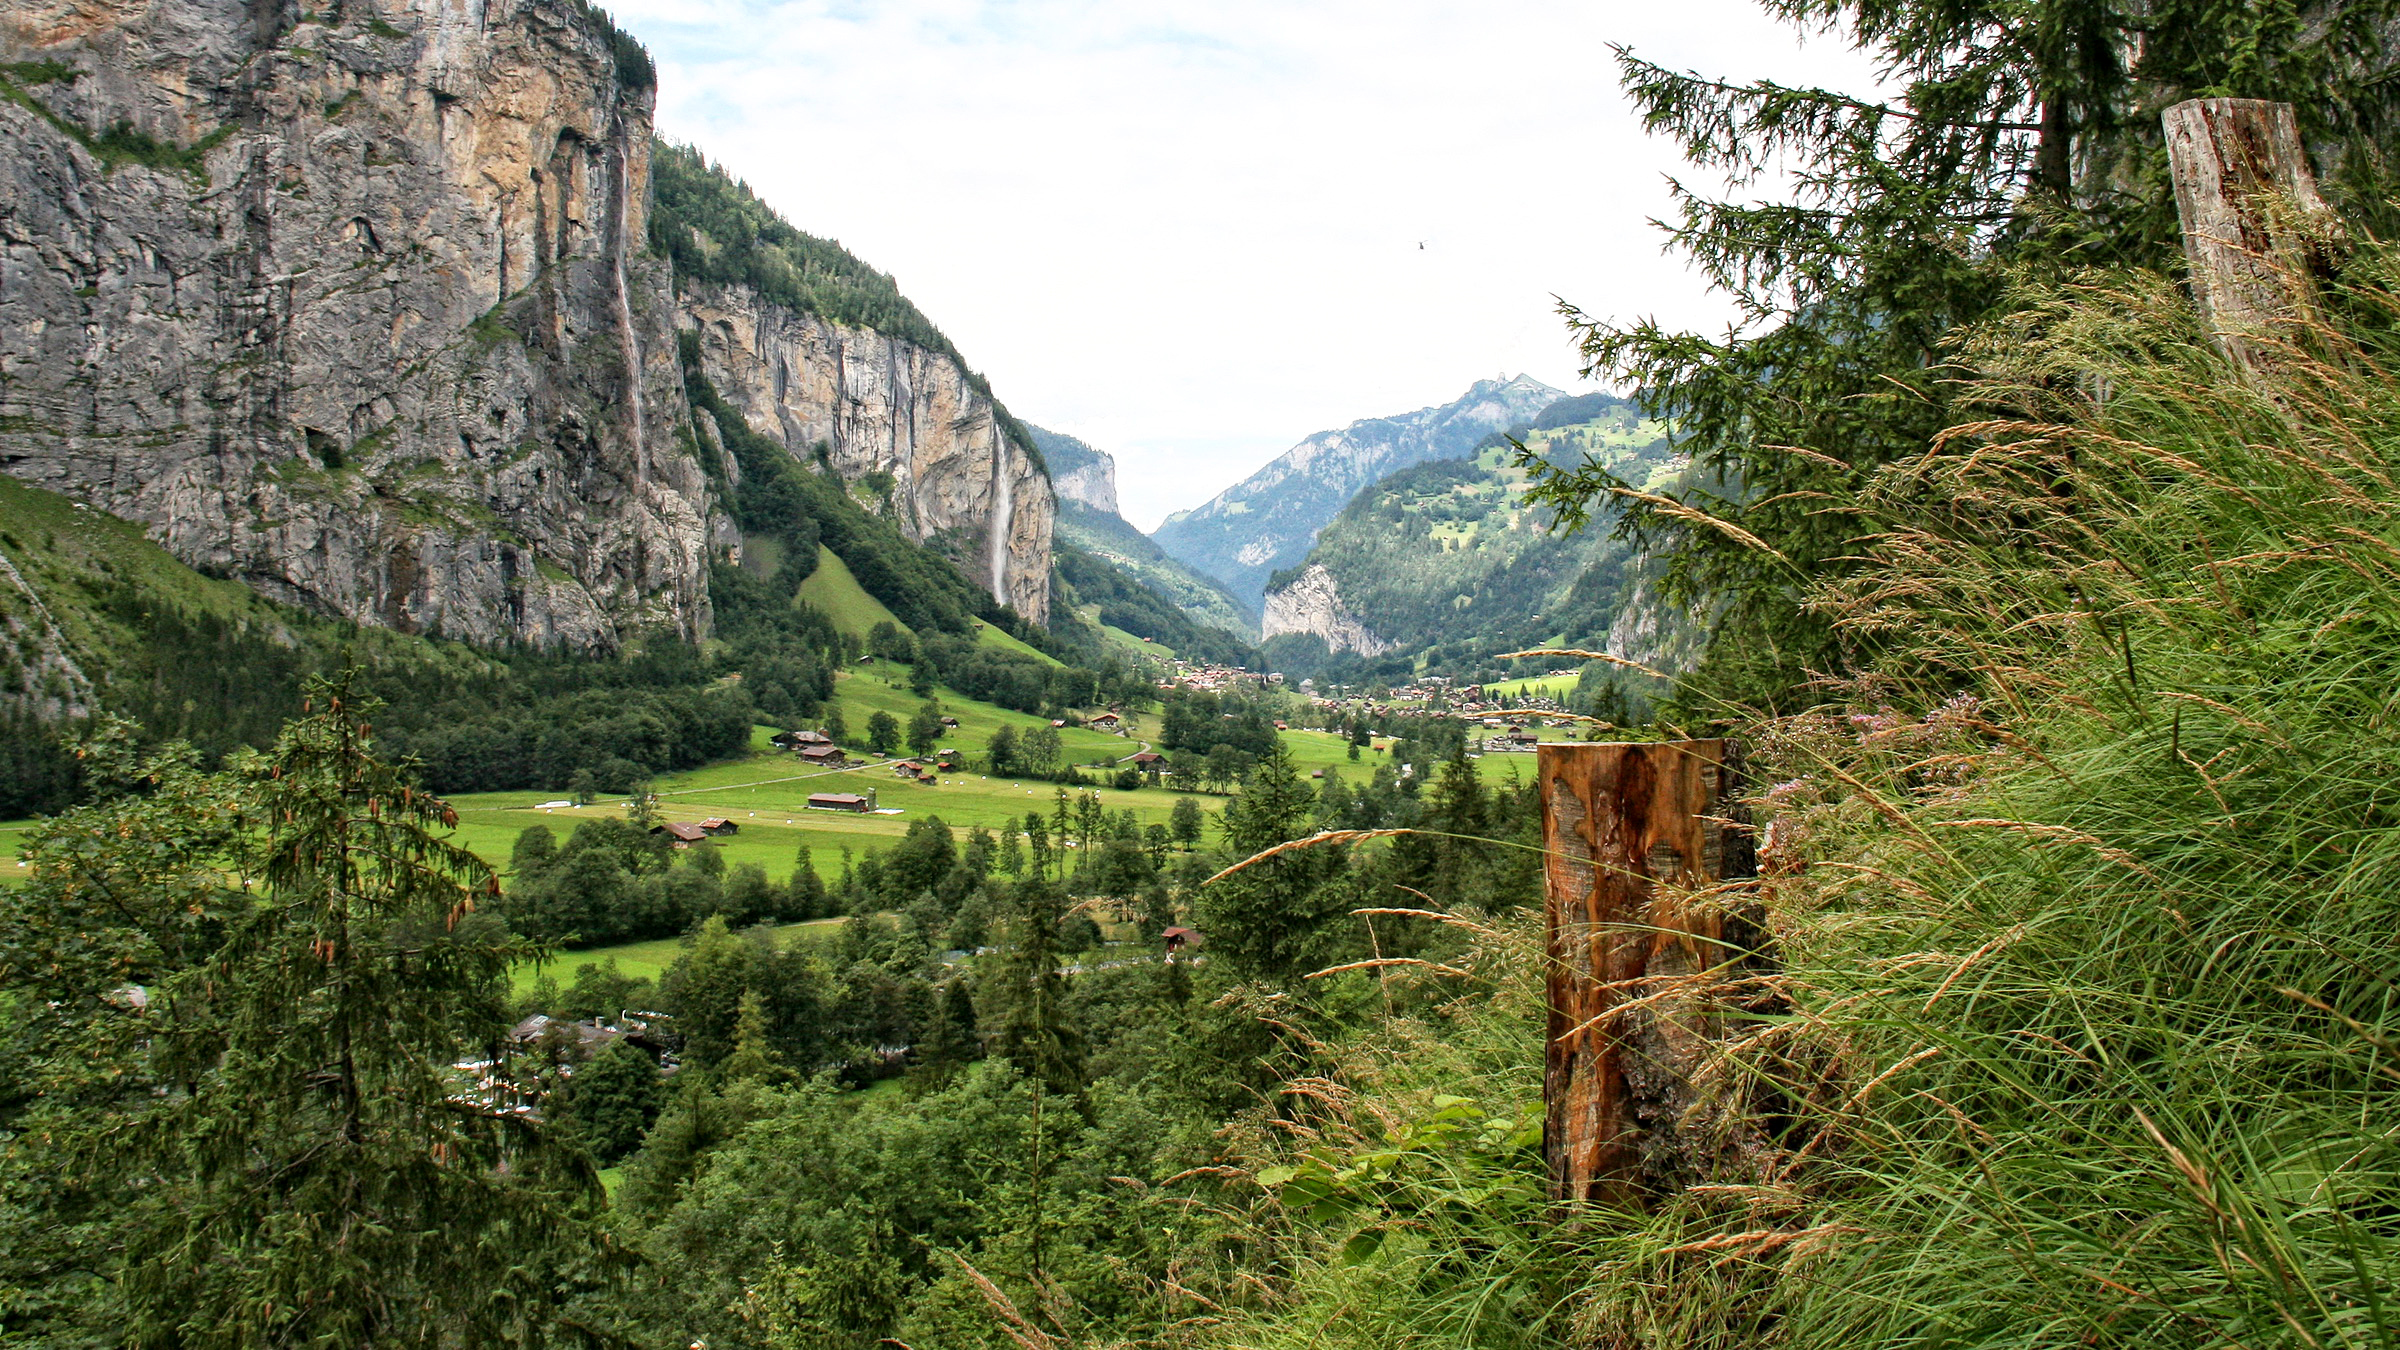 تصویر دهکده زیبای کوهستانی از بالا با طبیعت سبز شگفت انگیز